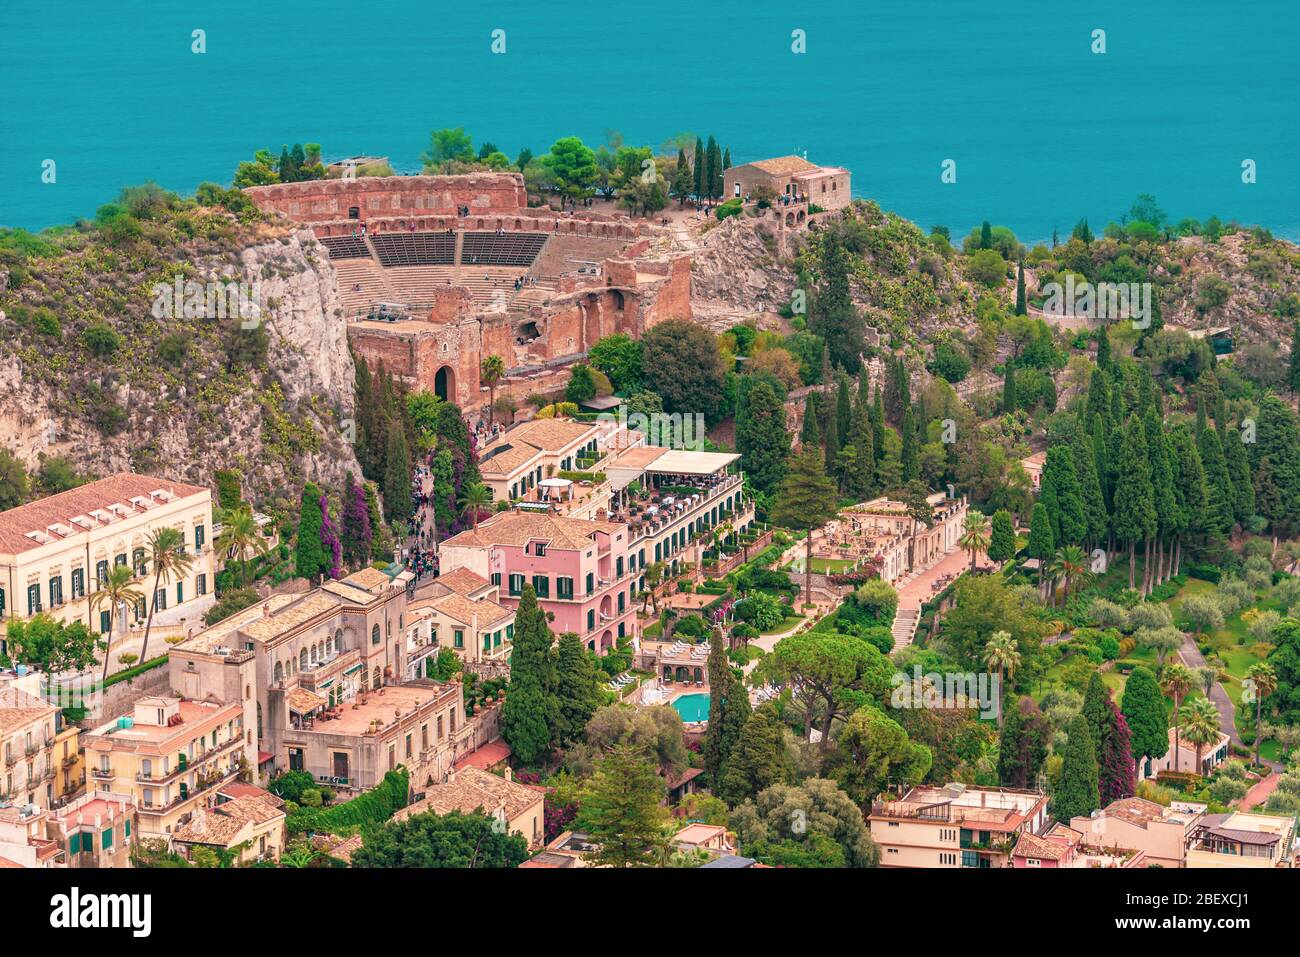 Vue panoramique sur le magnifique amphithéâtre de Taormine, ville historique de la province de Messine, Sicile Banque D'Images